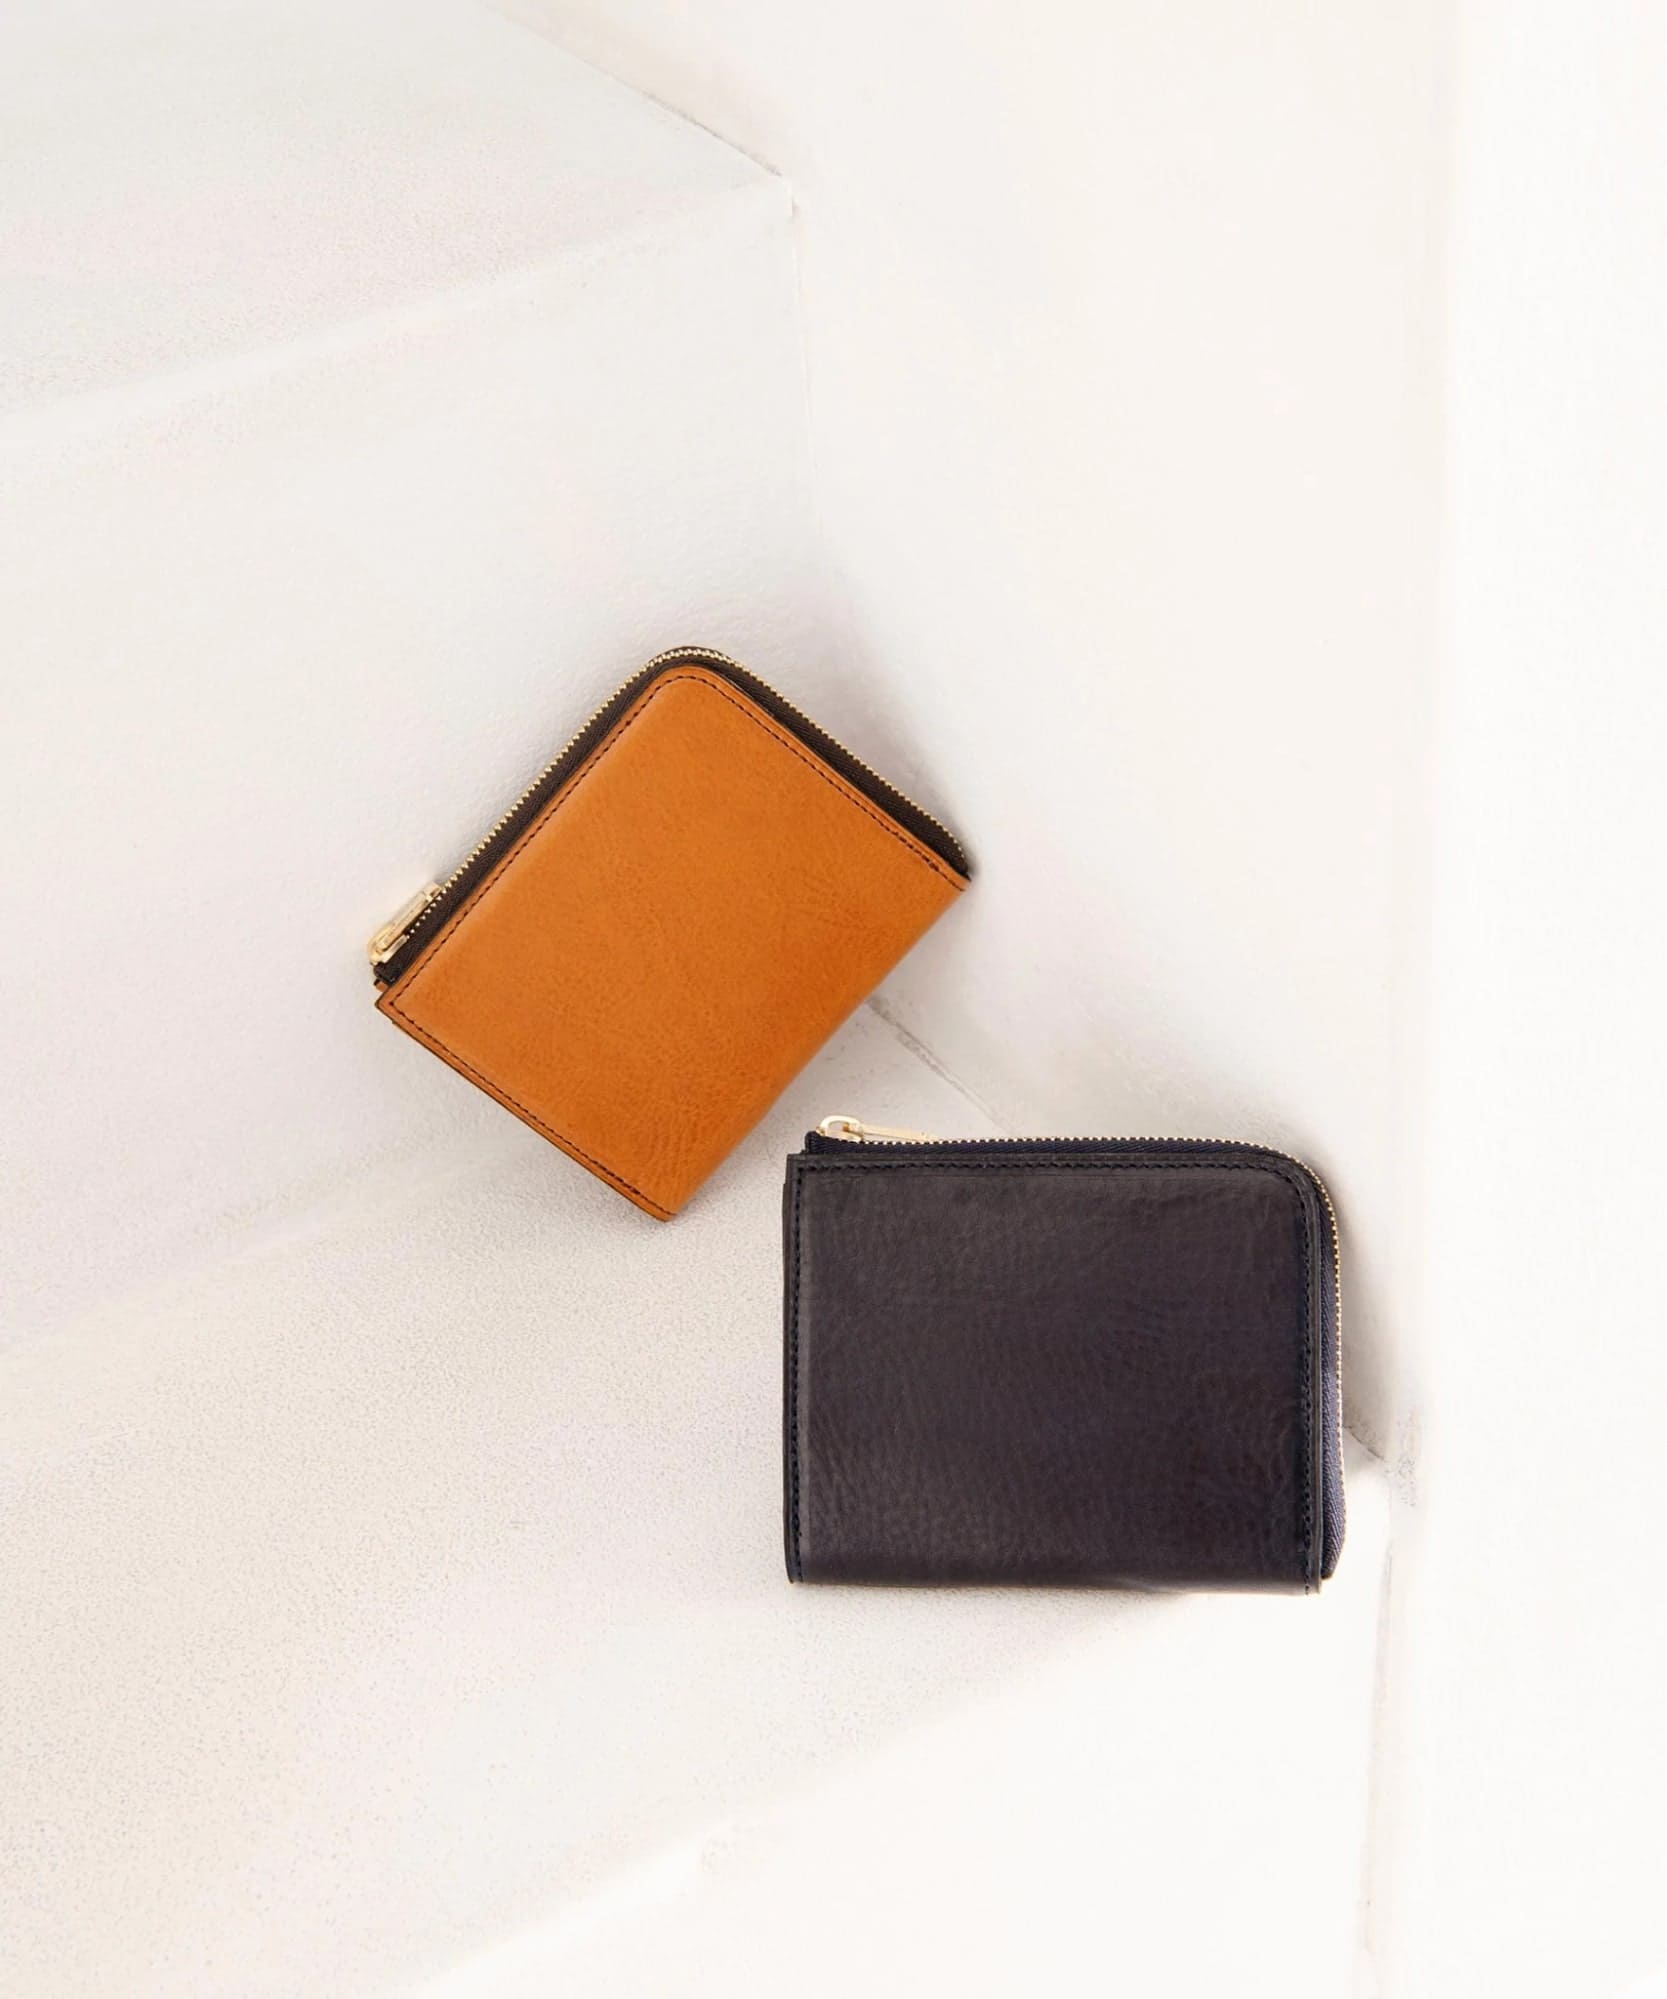 ライトブラウンとブラックのL字ファスナー財布